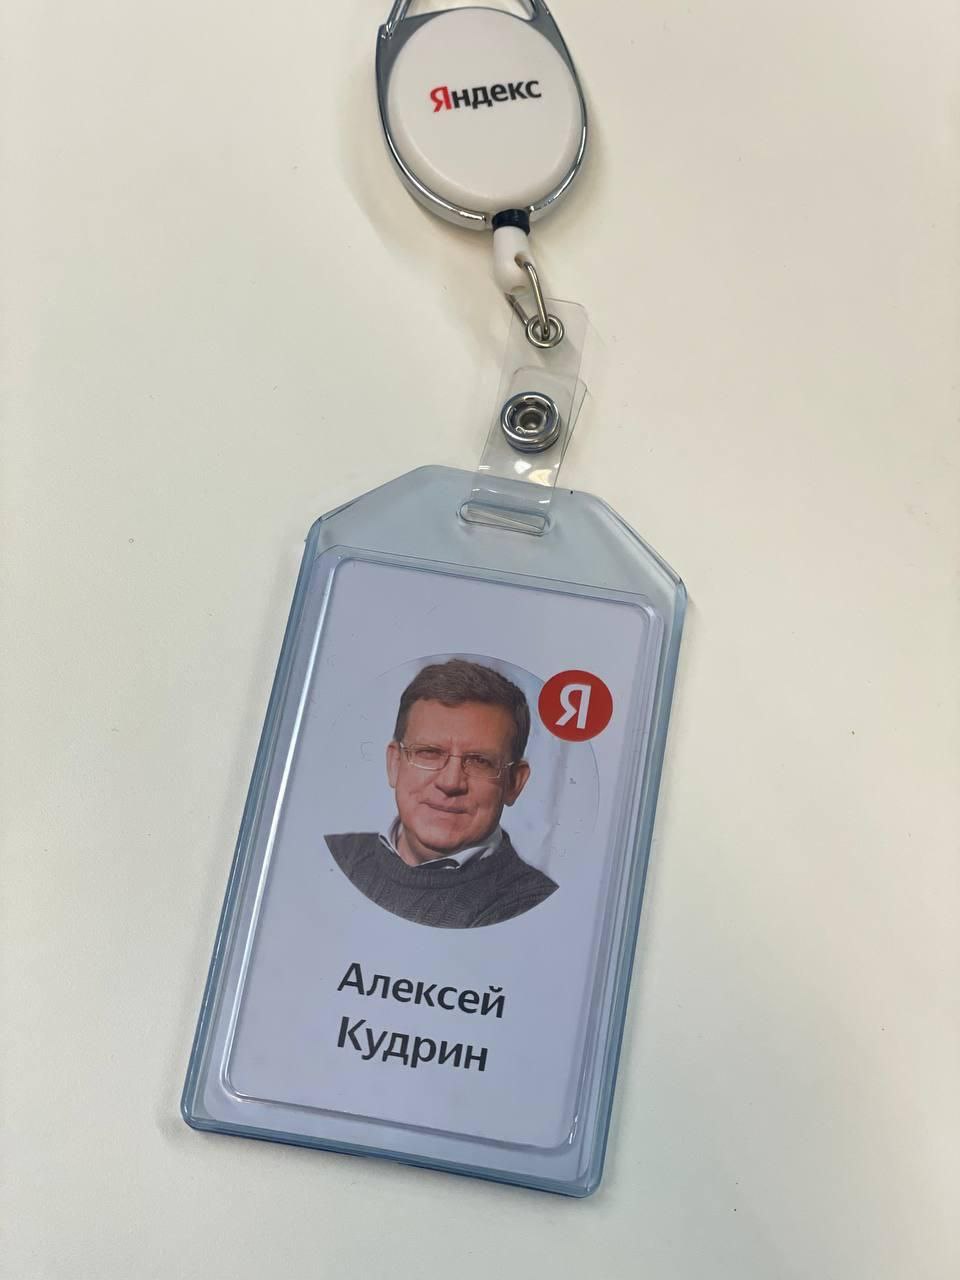 Алексей Кудрин сообщил о выходе на работу в Яндекс